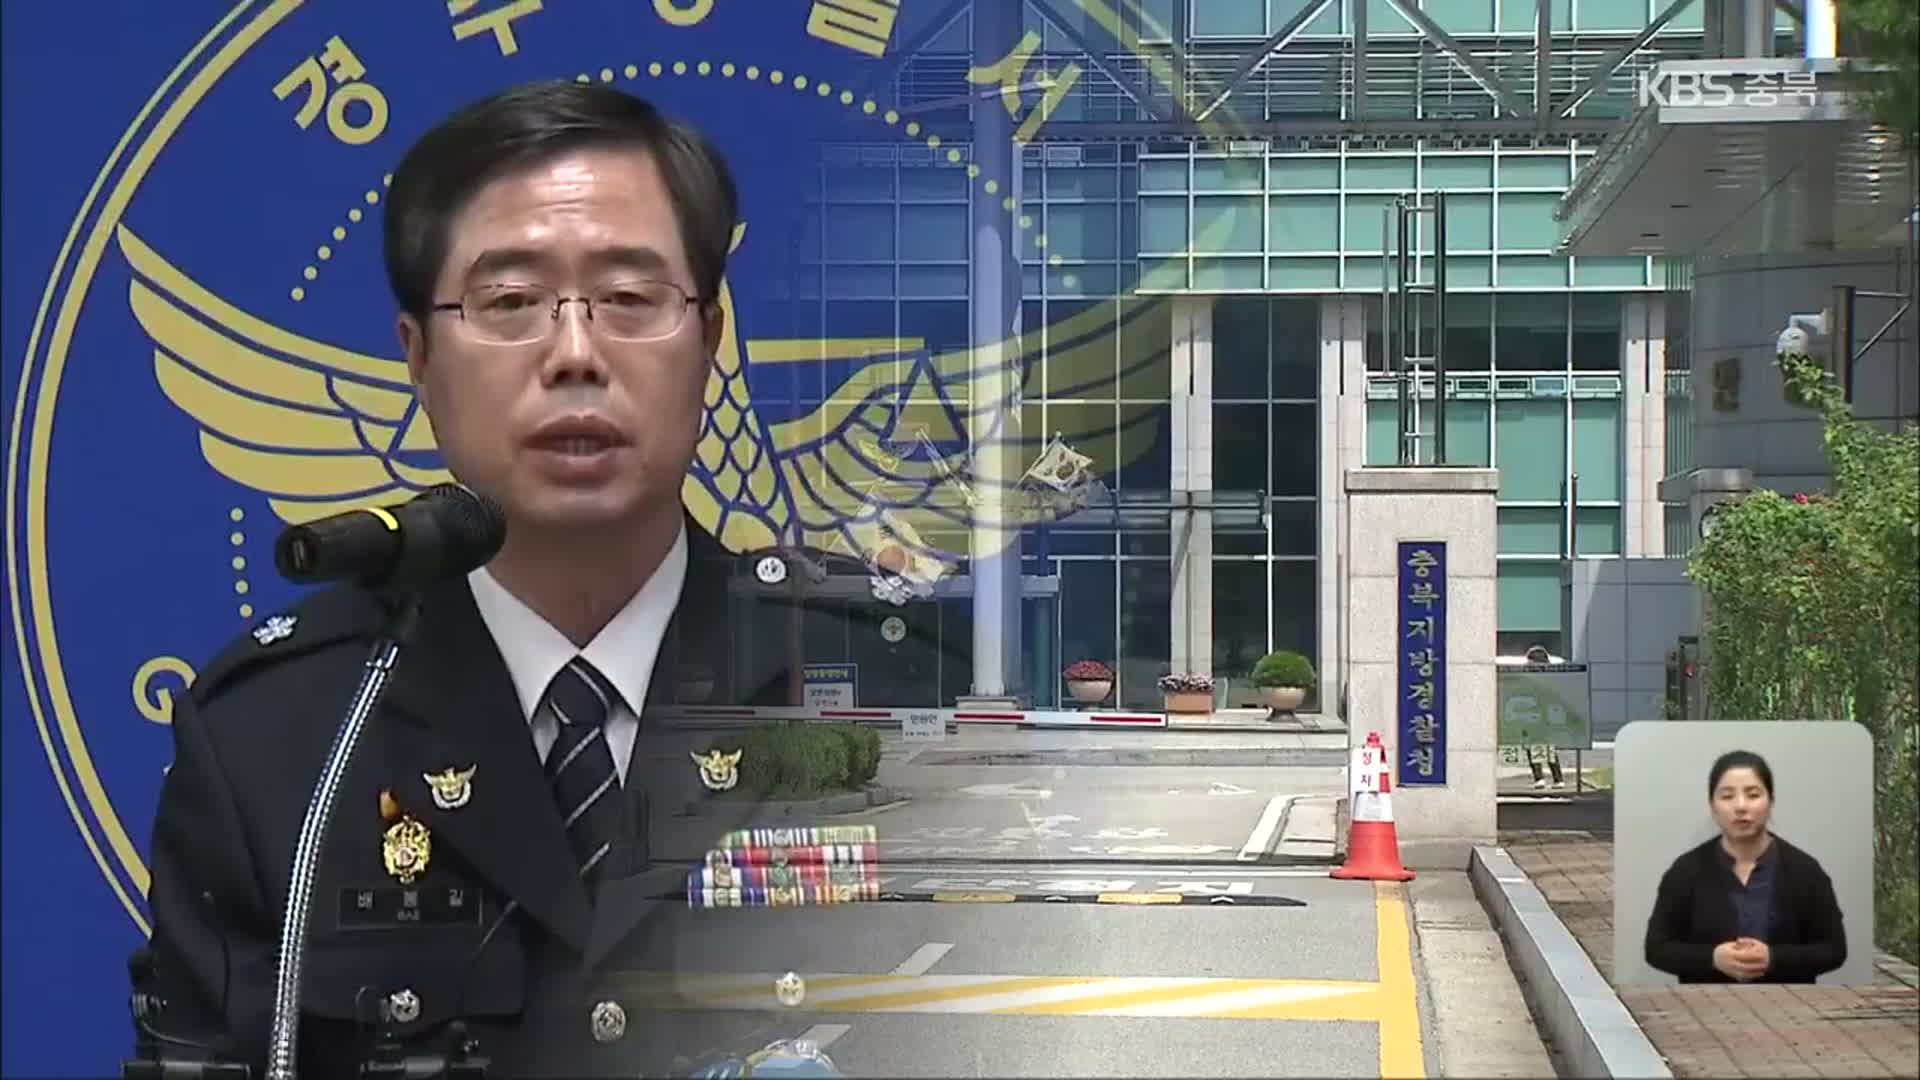 ‘기밀 유출 혐의’ 충북경찰 간부, 한 달만에 직위해제